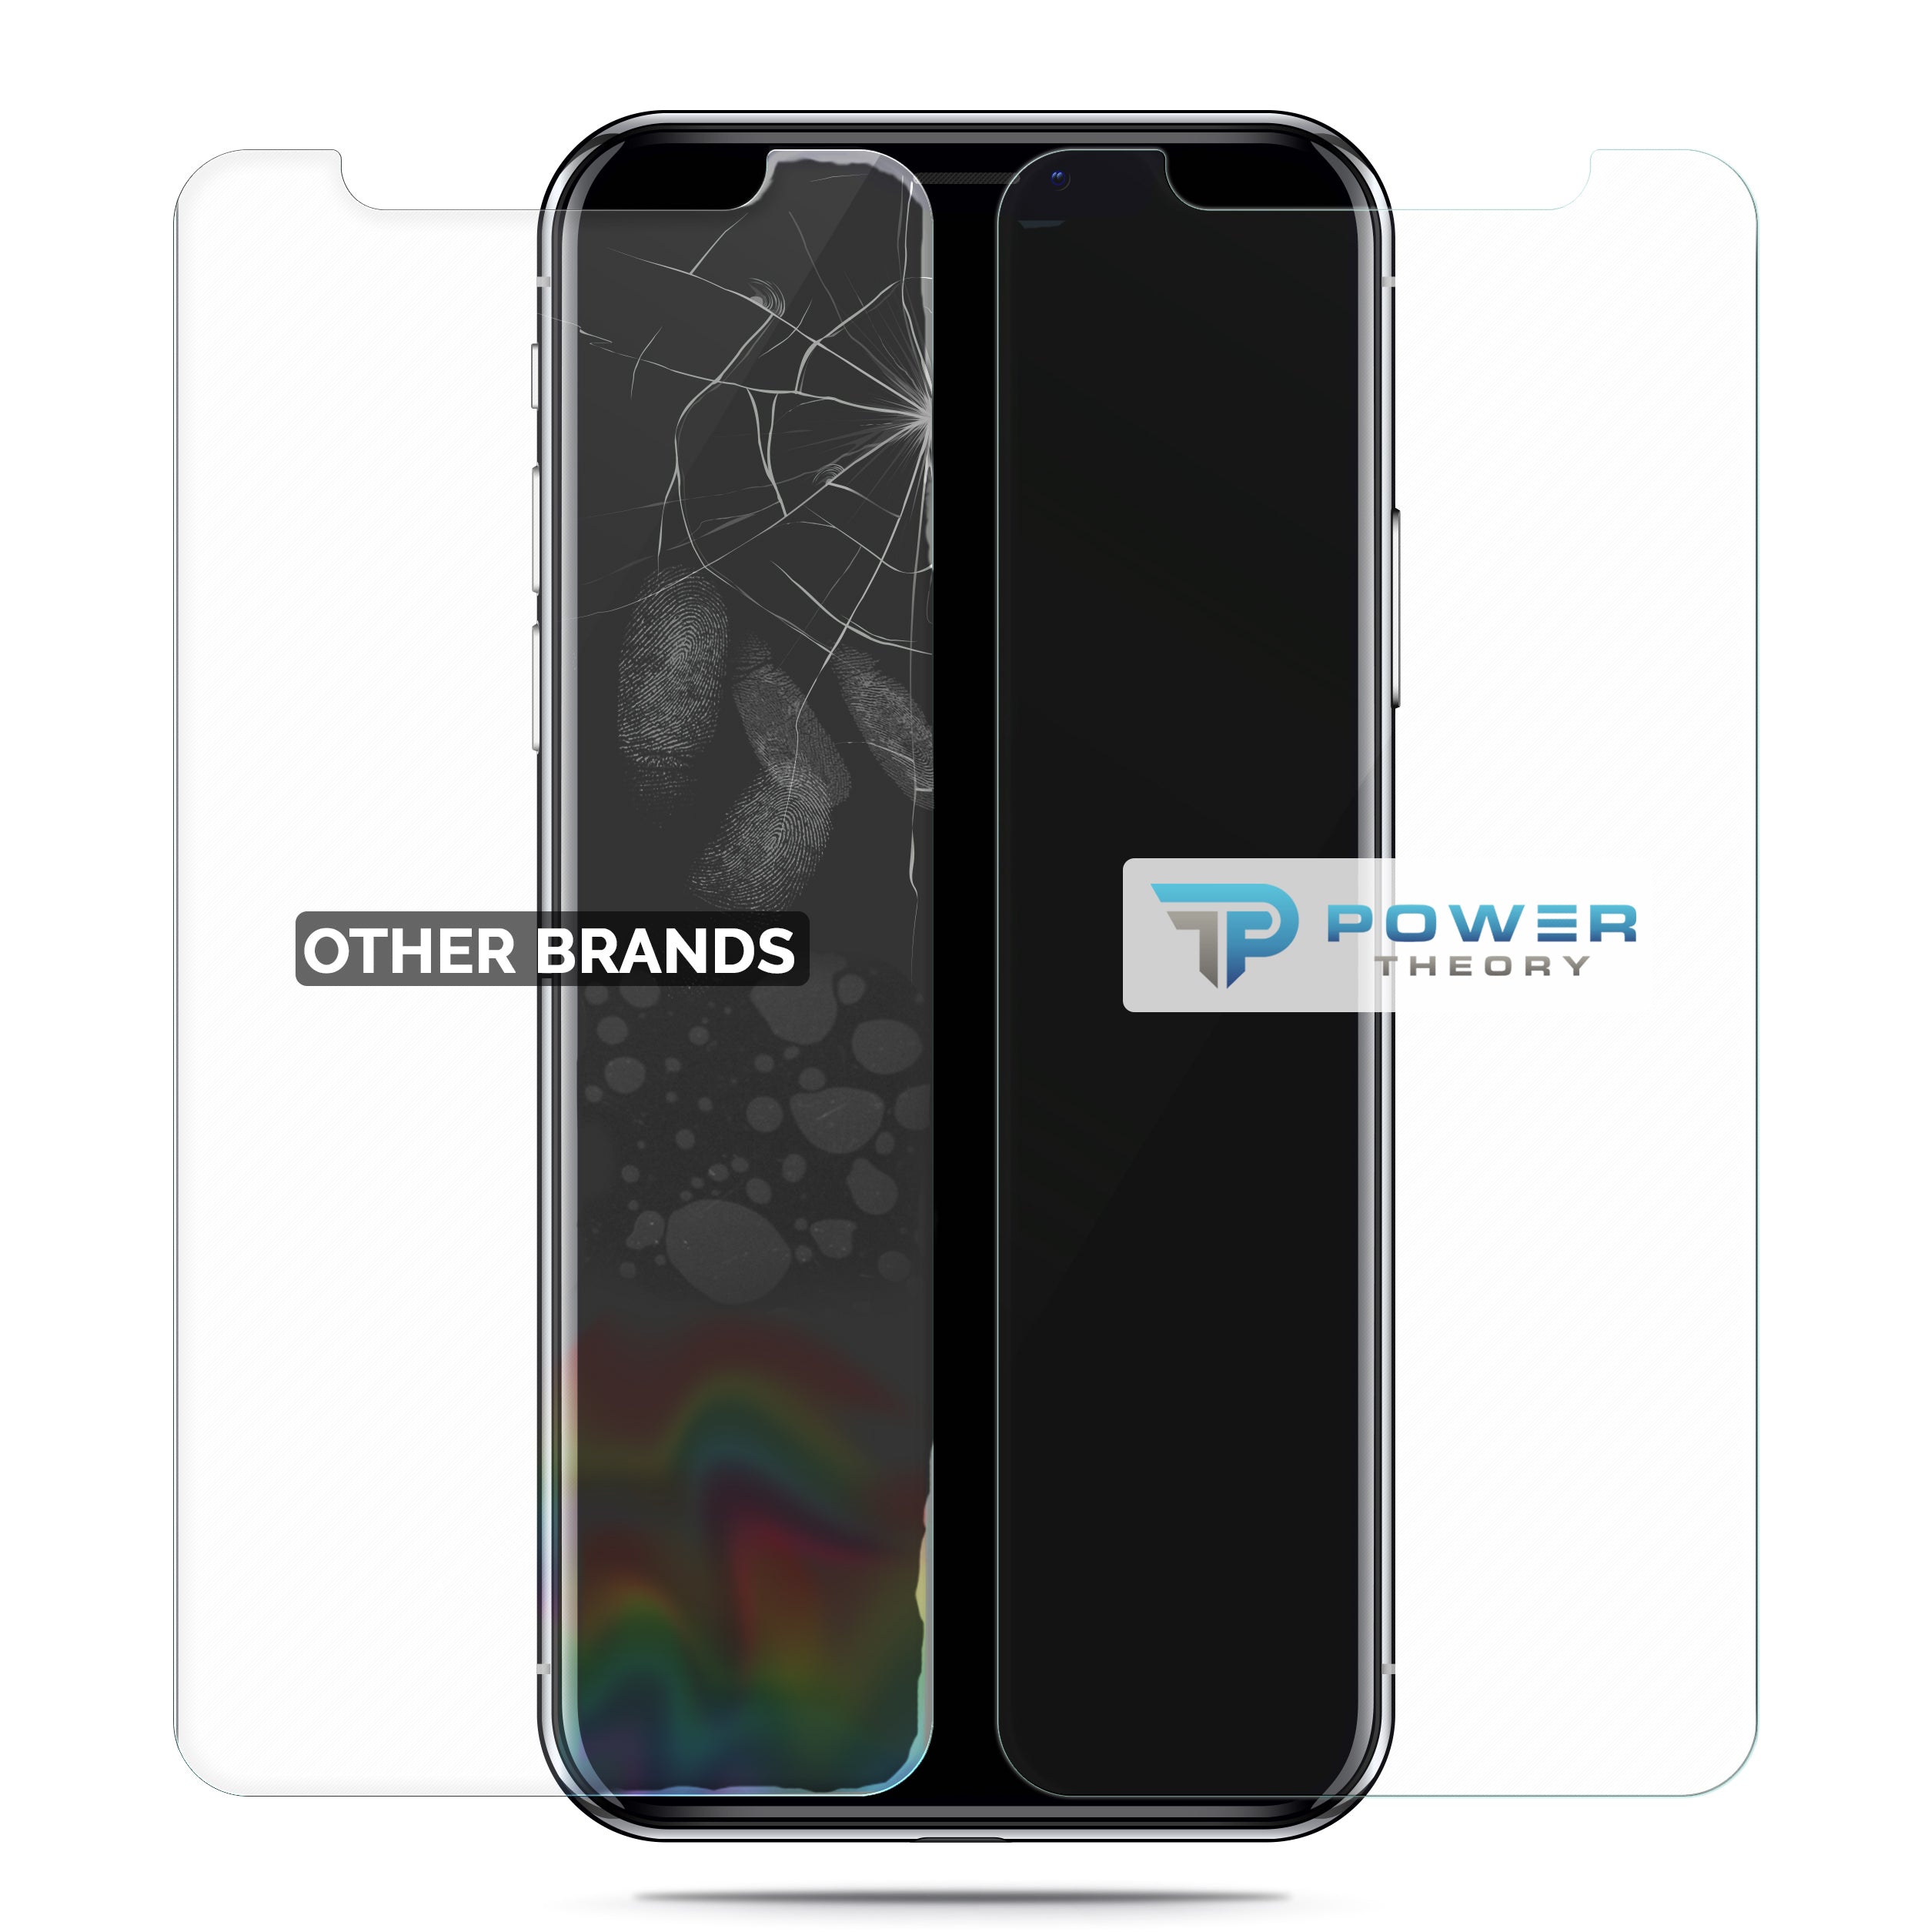 Power Theory Schutzfolie kompatibel mit iPhone XS/iPhone X [2 Stück] - mit Schablone, Glas Folie, Displayschutzfolie, Schutzglas